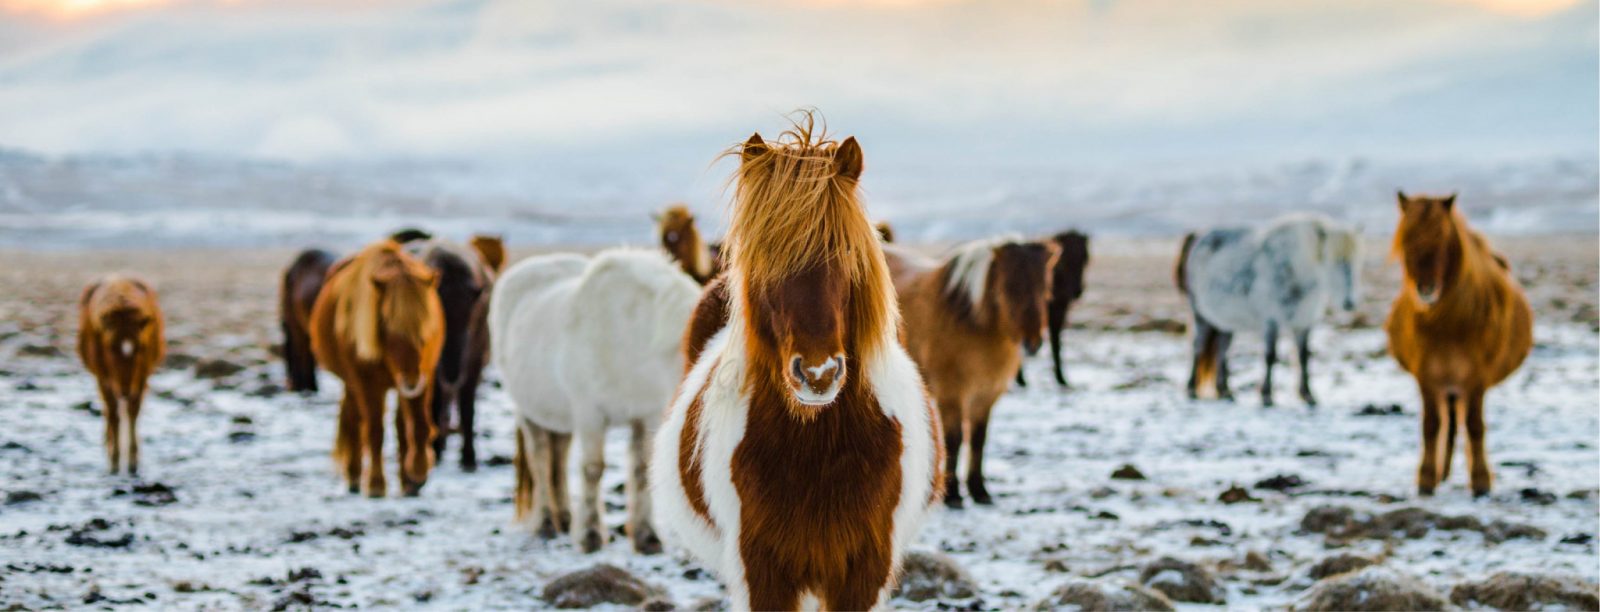 Islanshästar på vintern